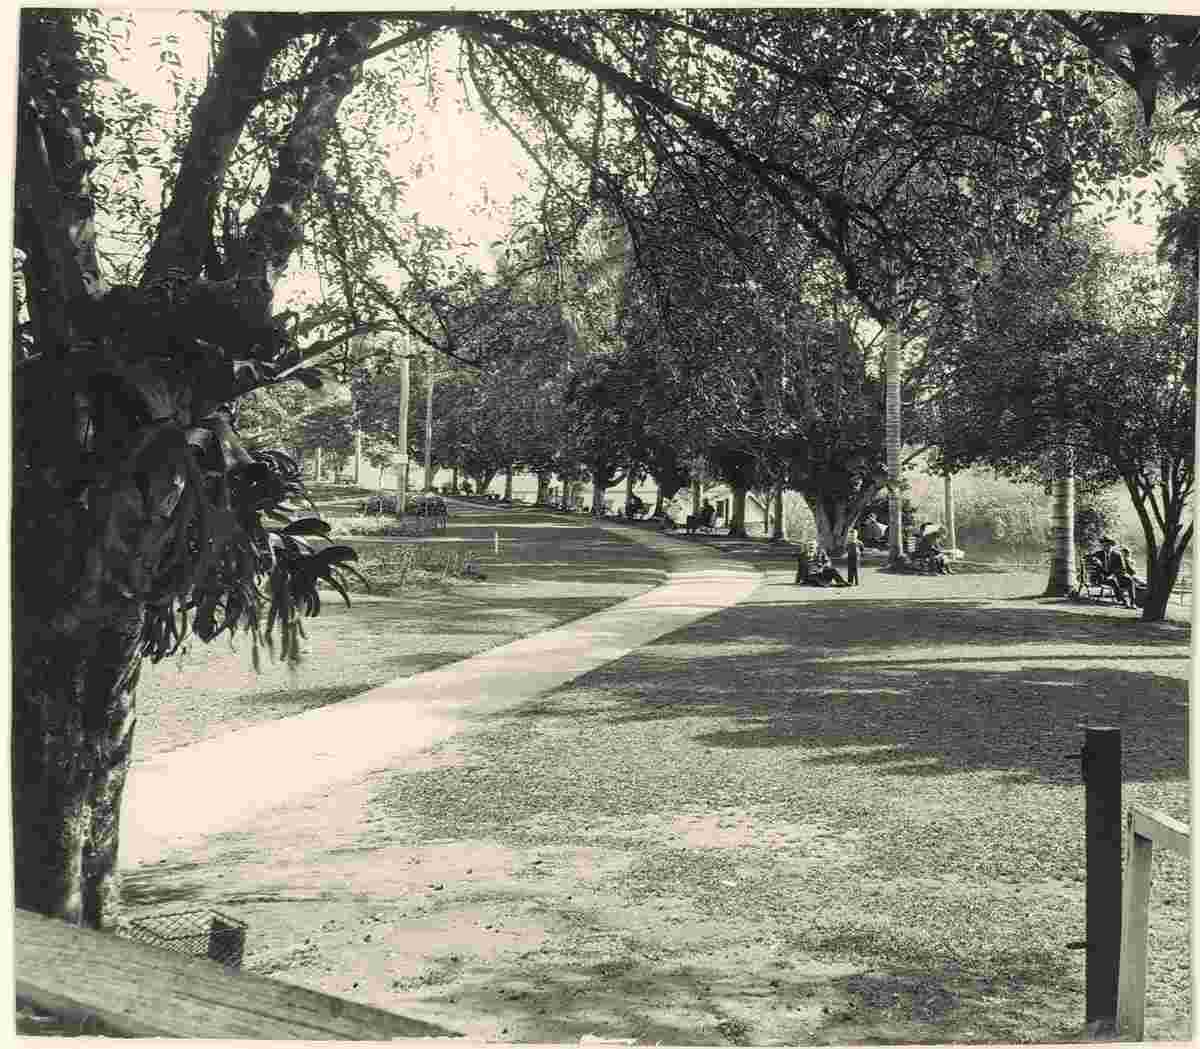 Lismore. A park